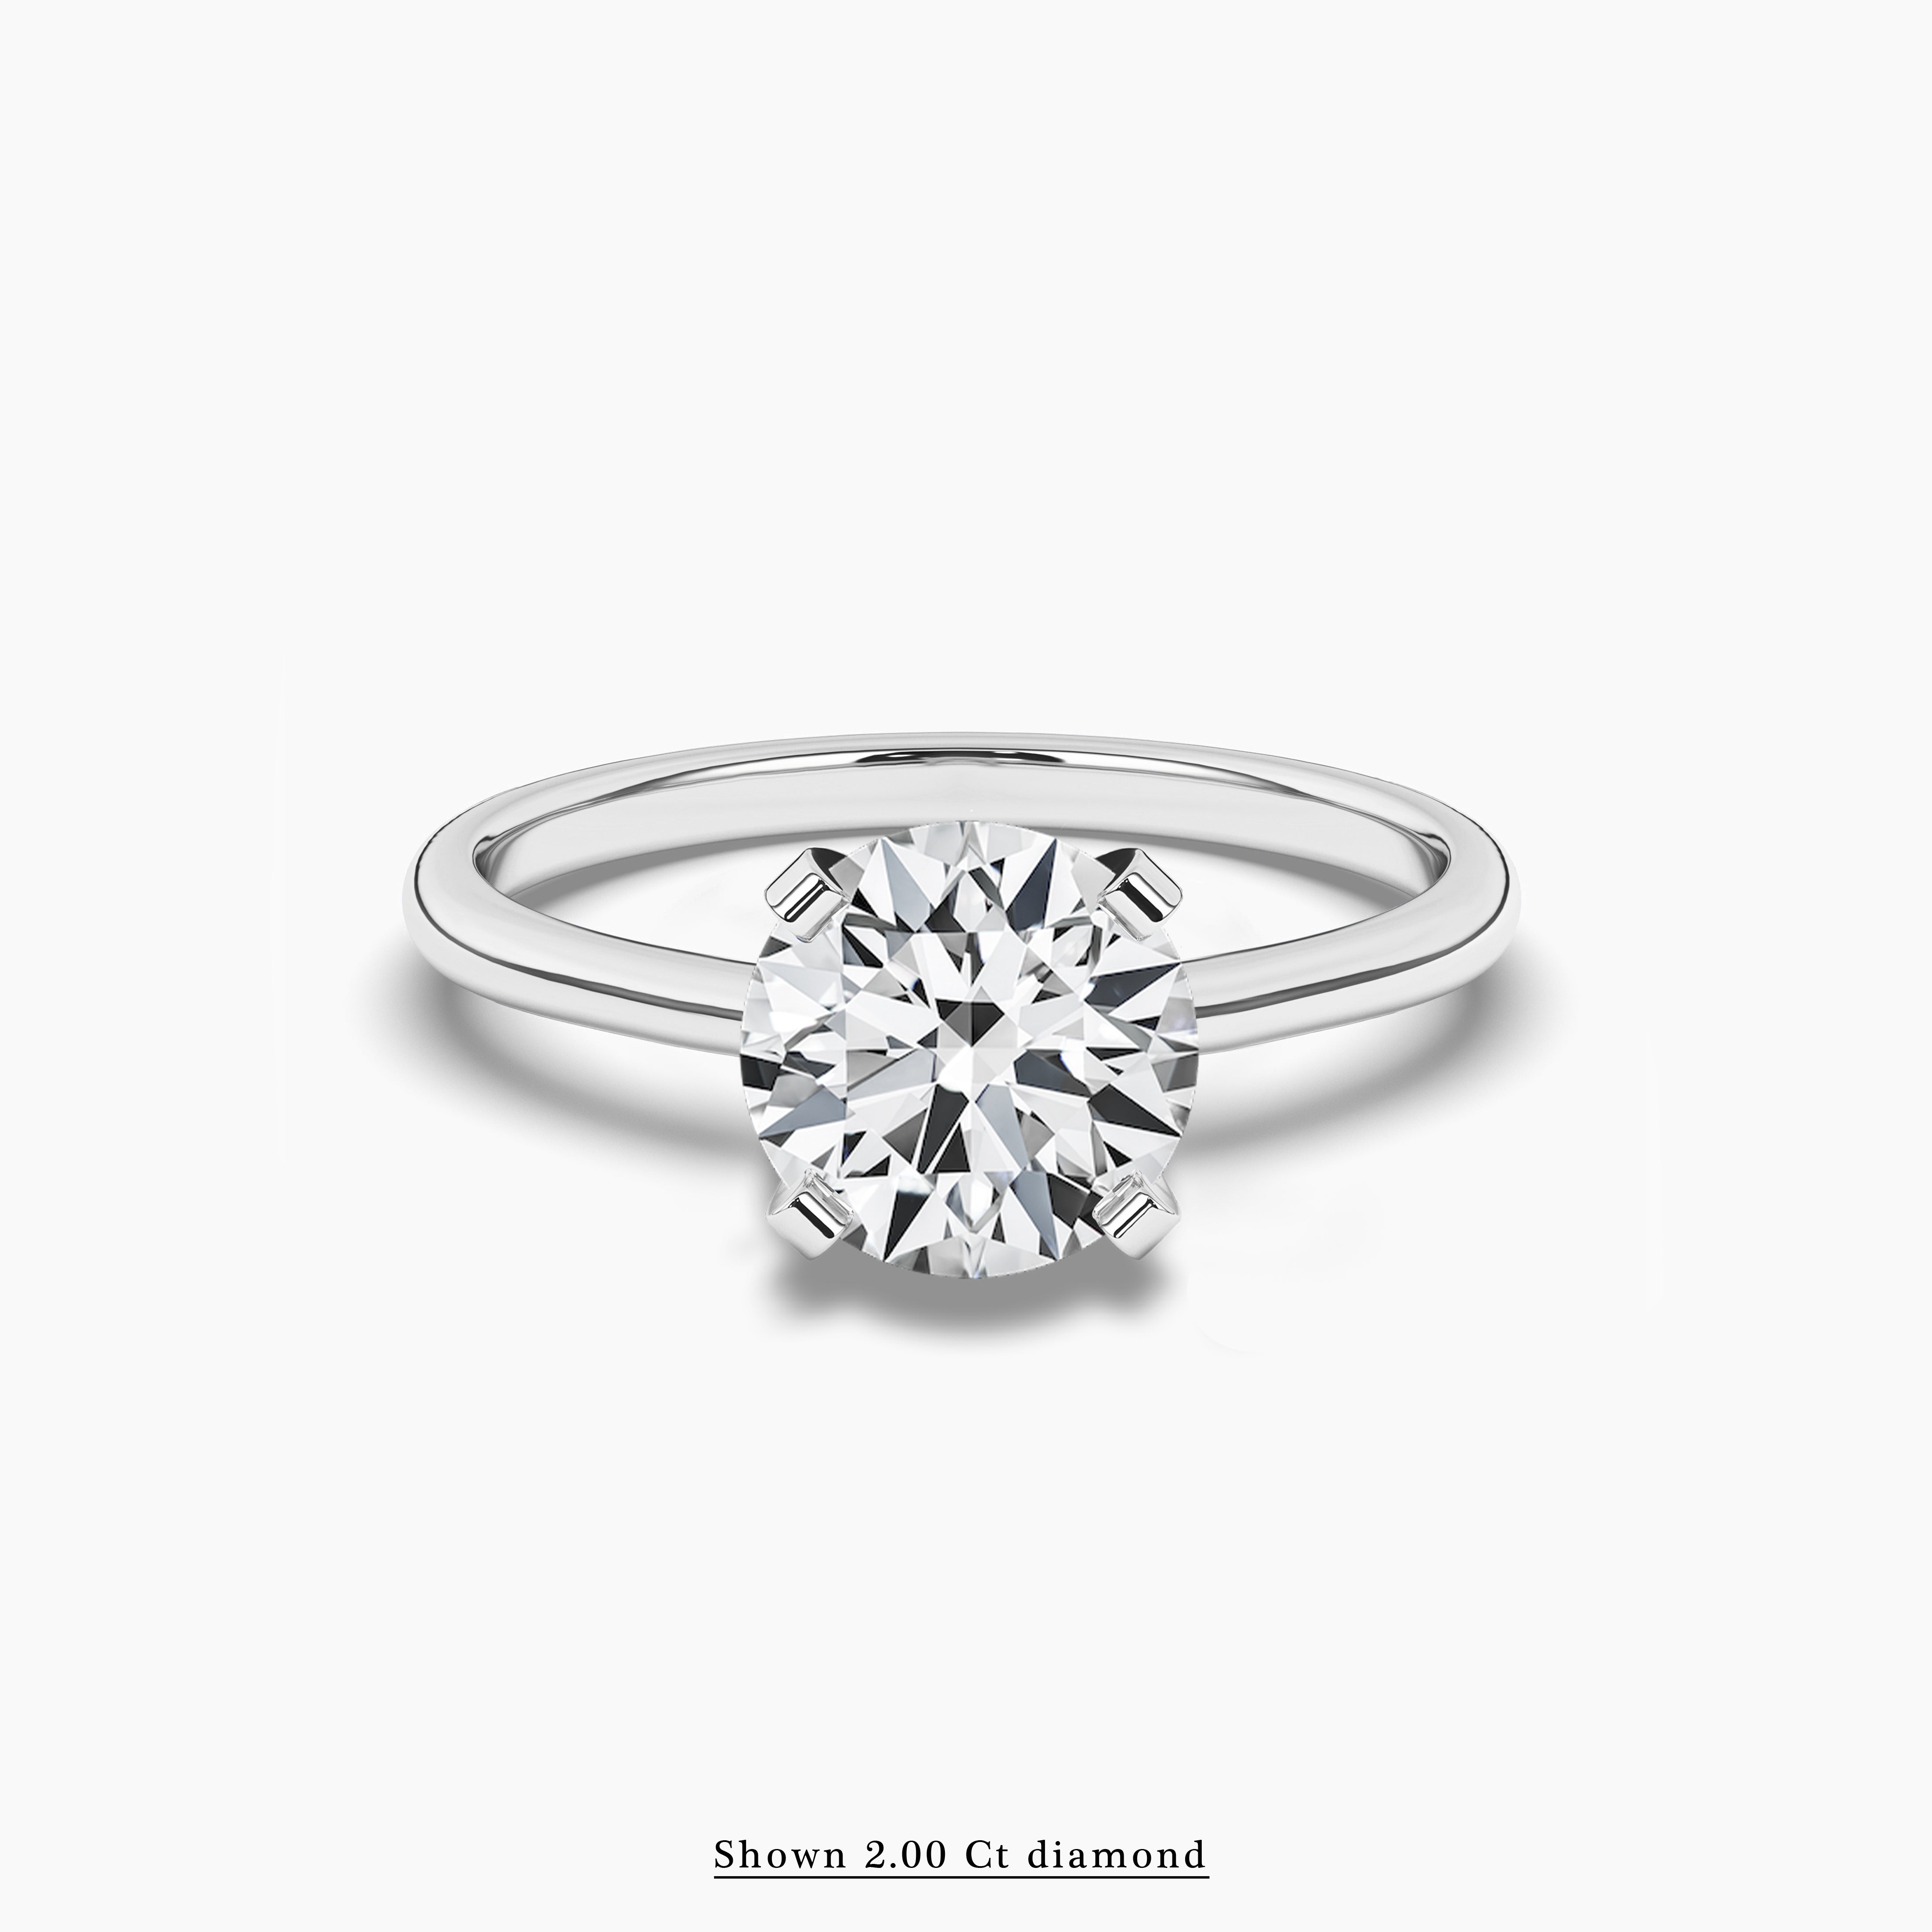 2.00 ct white gold round diamond engagement ring 